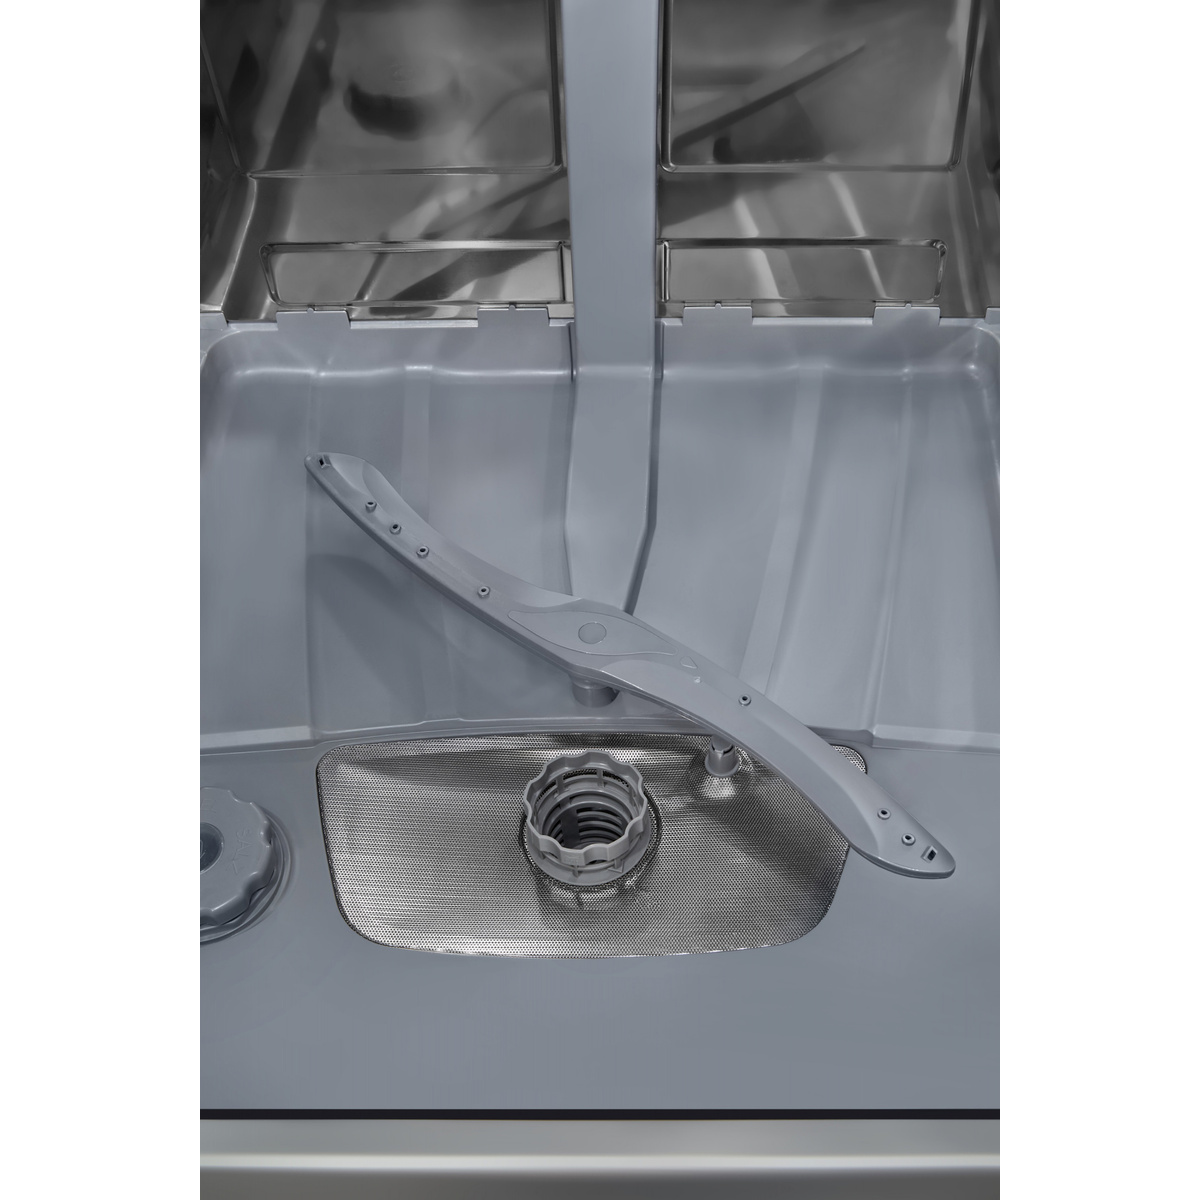 Посудомоечная машина Hyundai DF105 (Цвет: White)